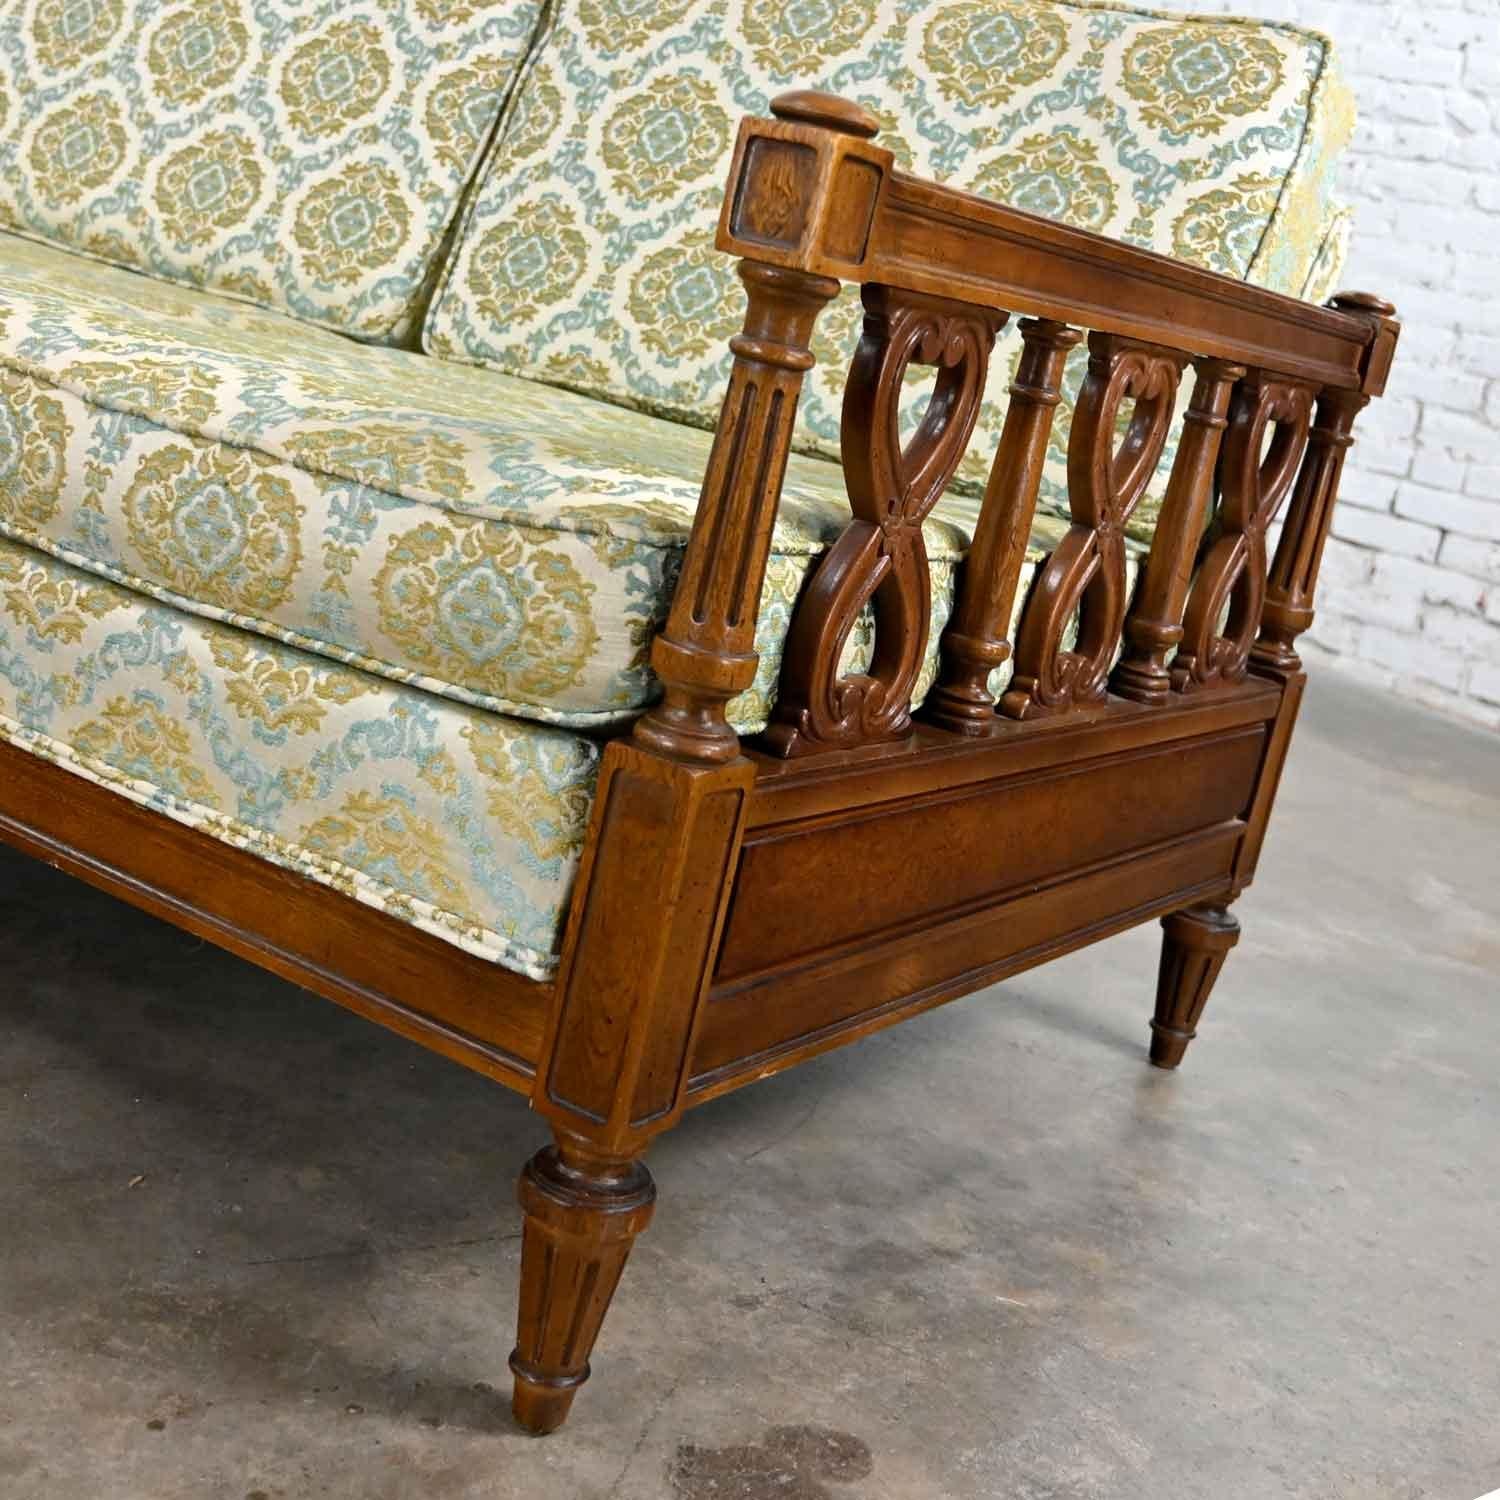 Brocade Vintage Mediterranean Spanish Revival Style Sofa Wood Details by American Furn